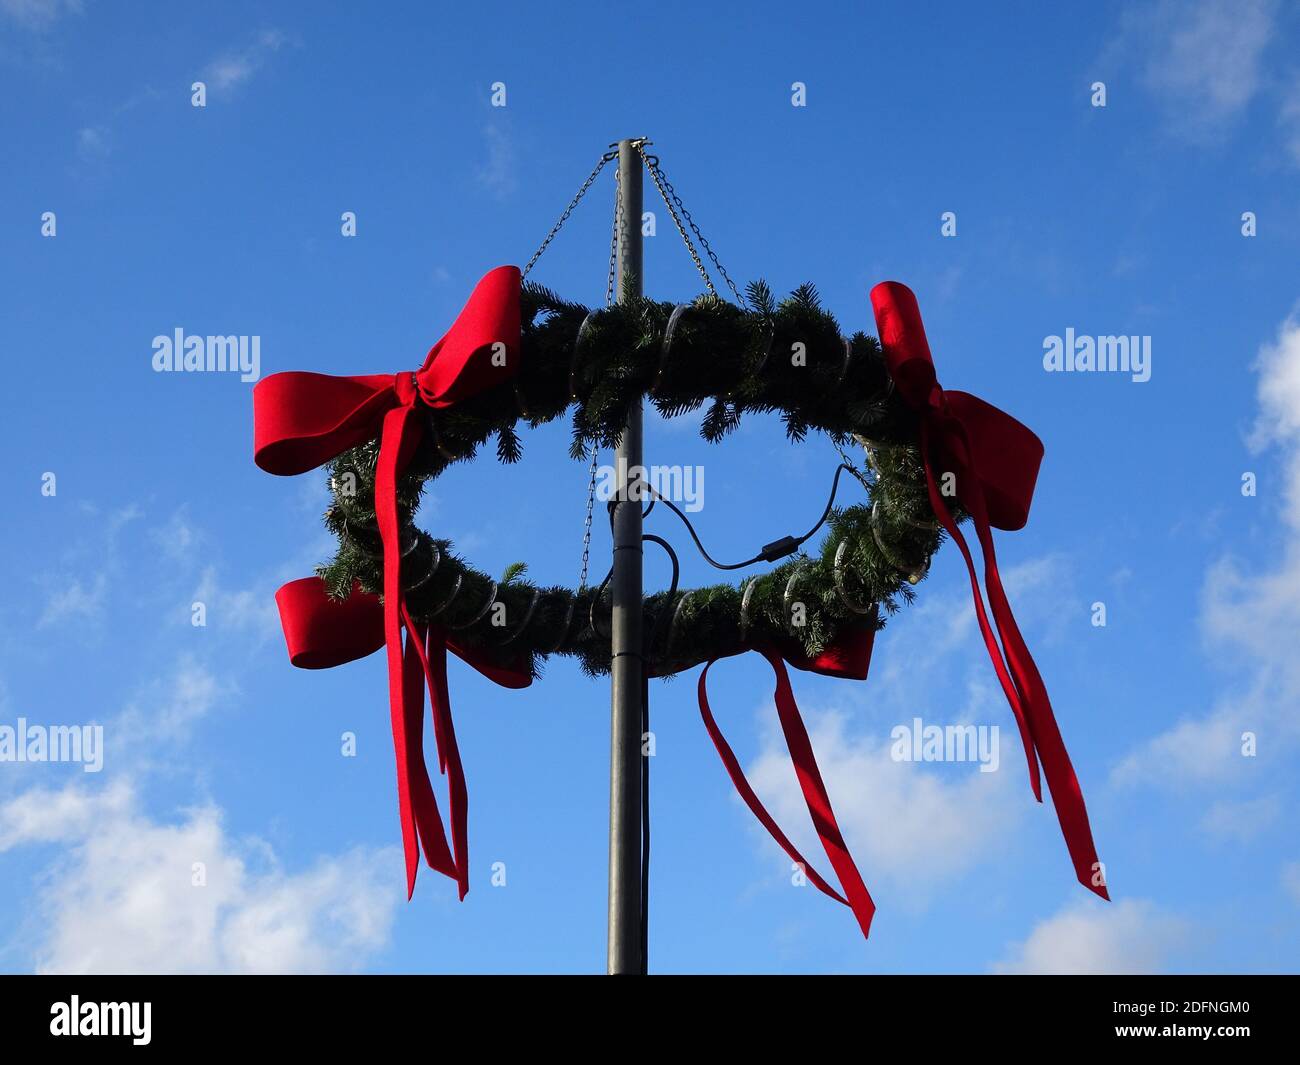 Corona di Natale con rami di abete e nastri rossi su un palo. Cielo blu con nuvole come sfondo.Avvento corona, avvento Foto Stock